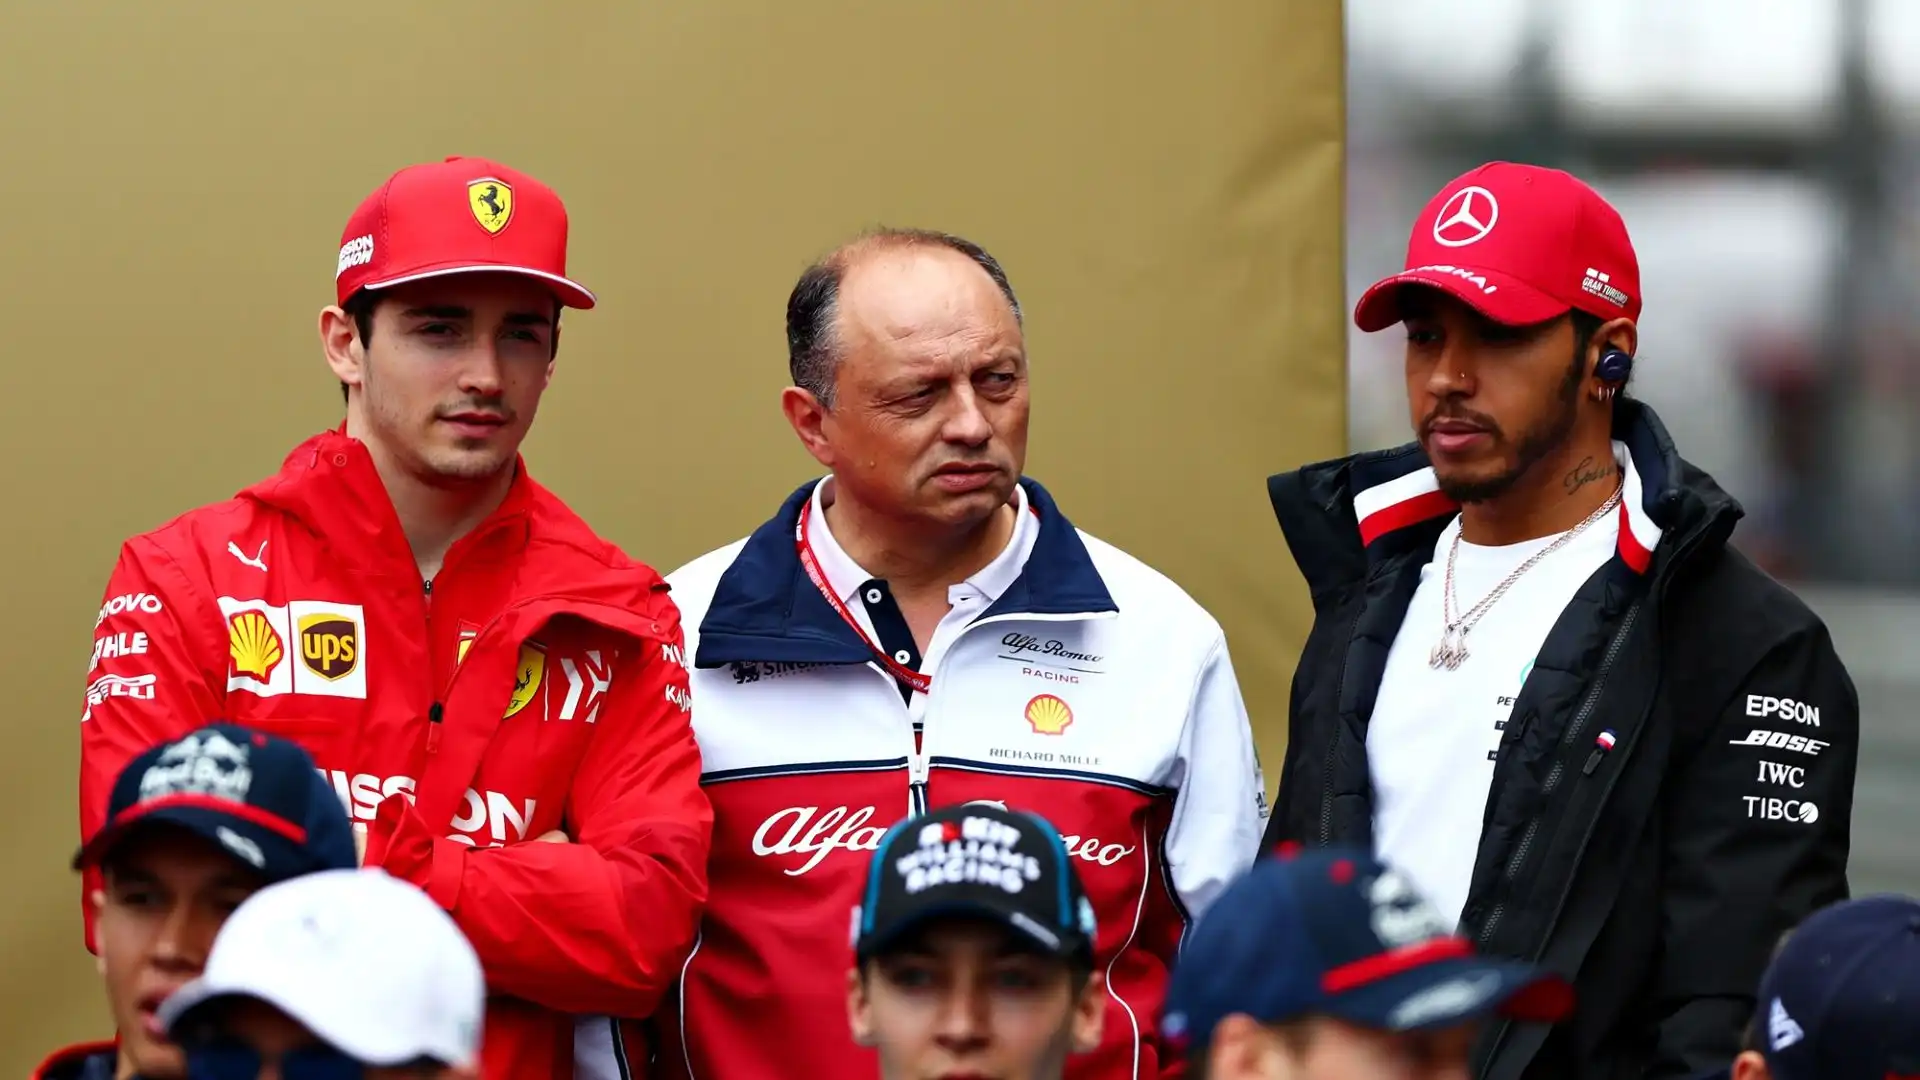 Leclerc ha nettamente smentito di aver chiesto garanzie o di essere rimasto "sorpreso e deluso" dall'arrivo di Hamilton